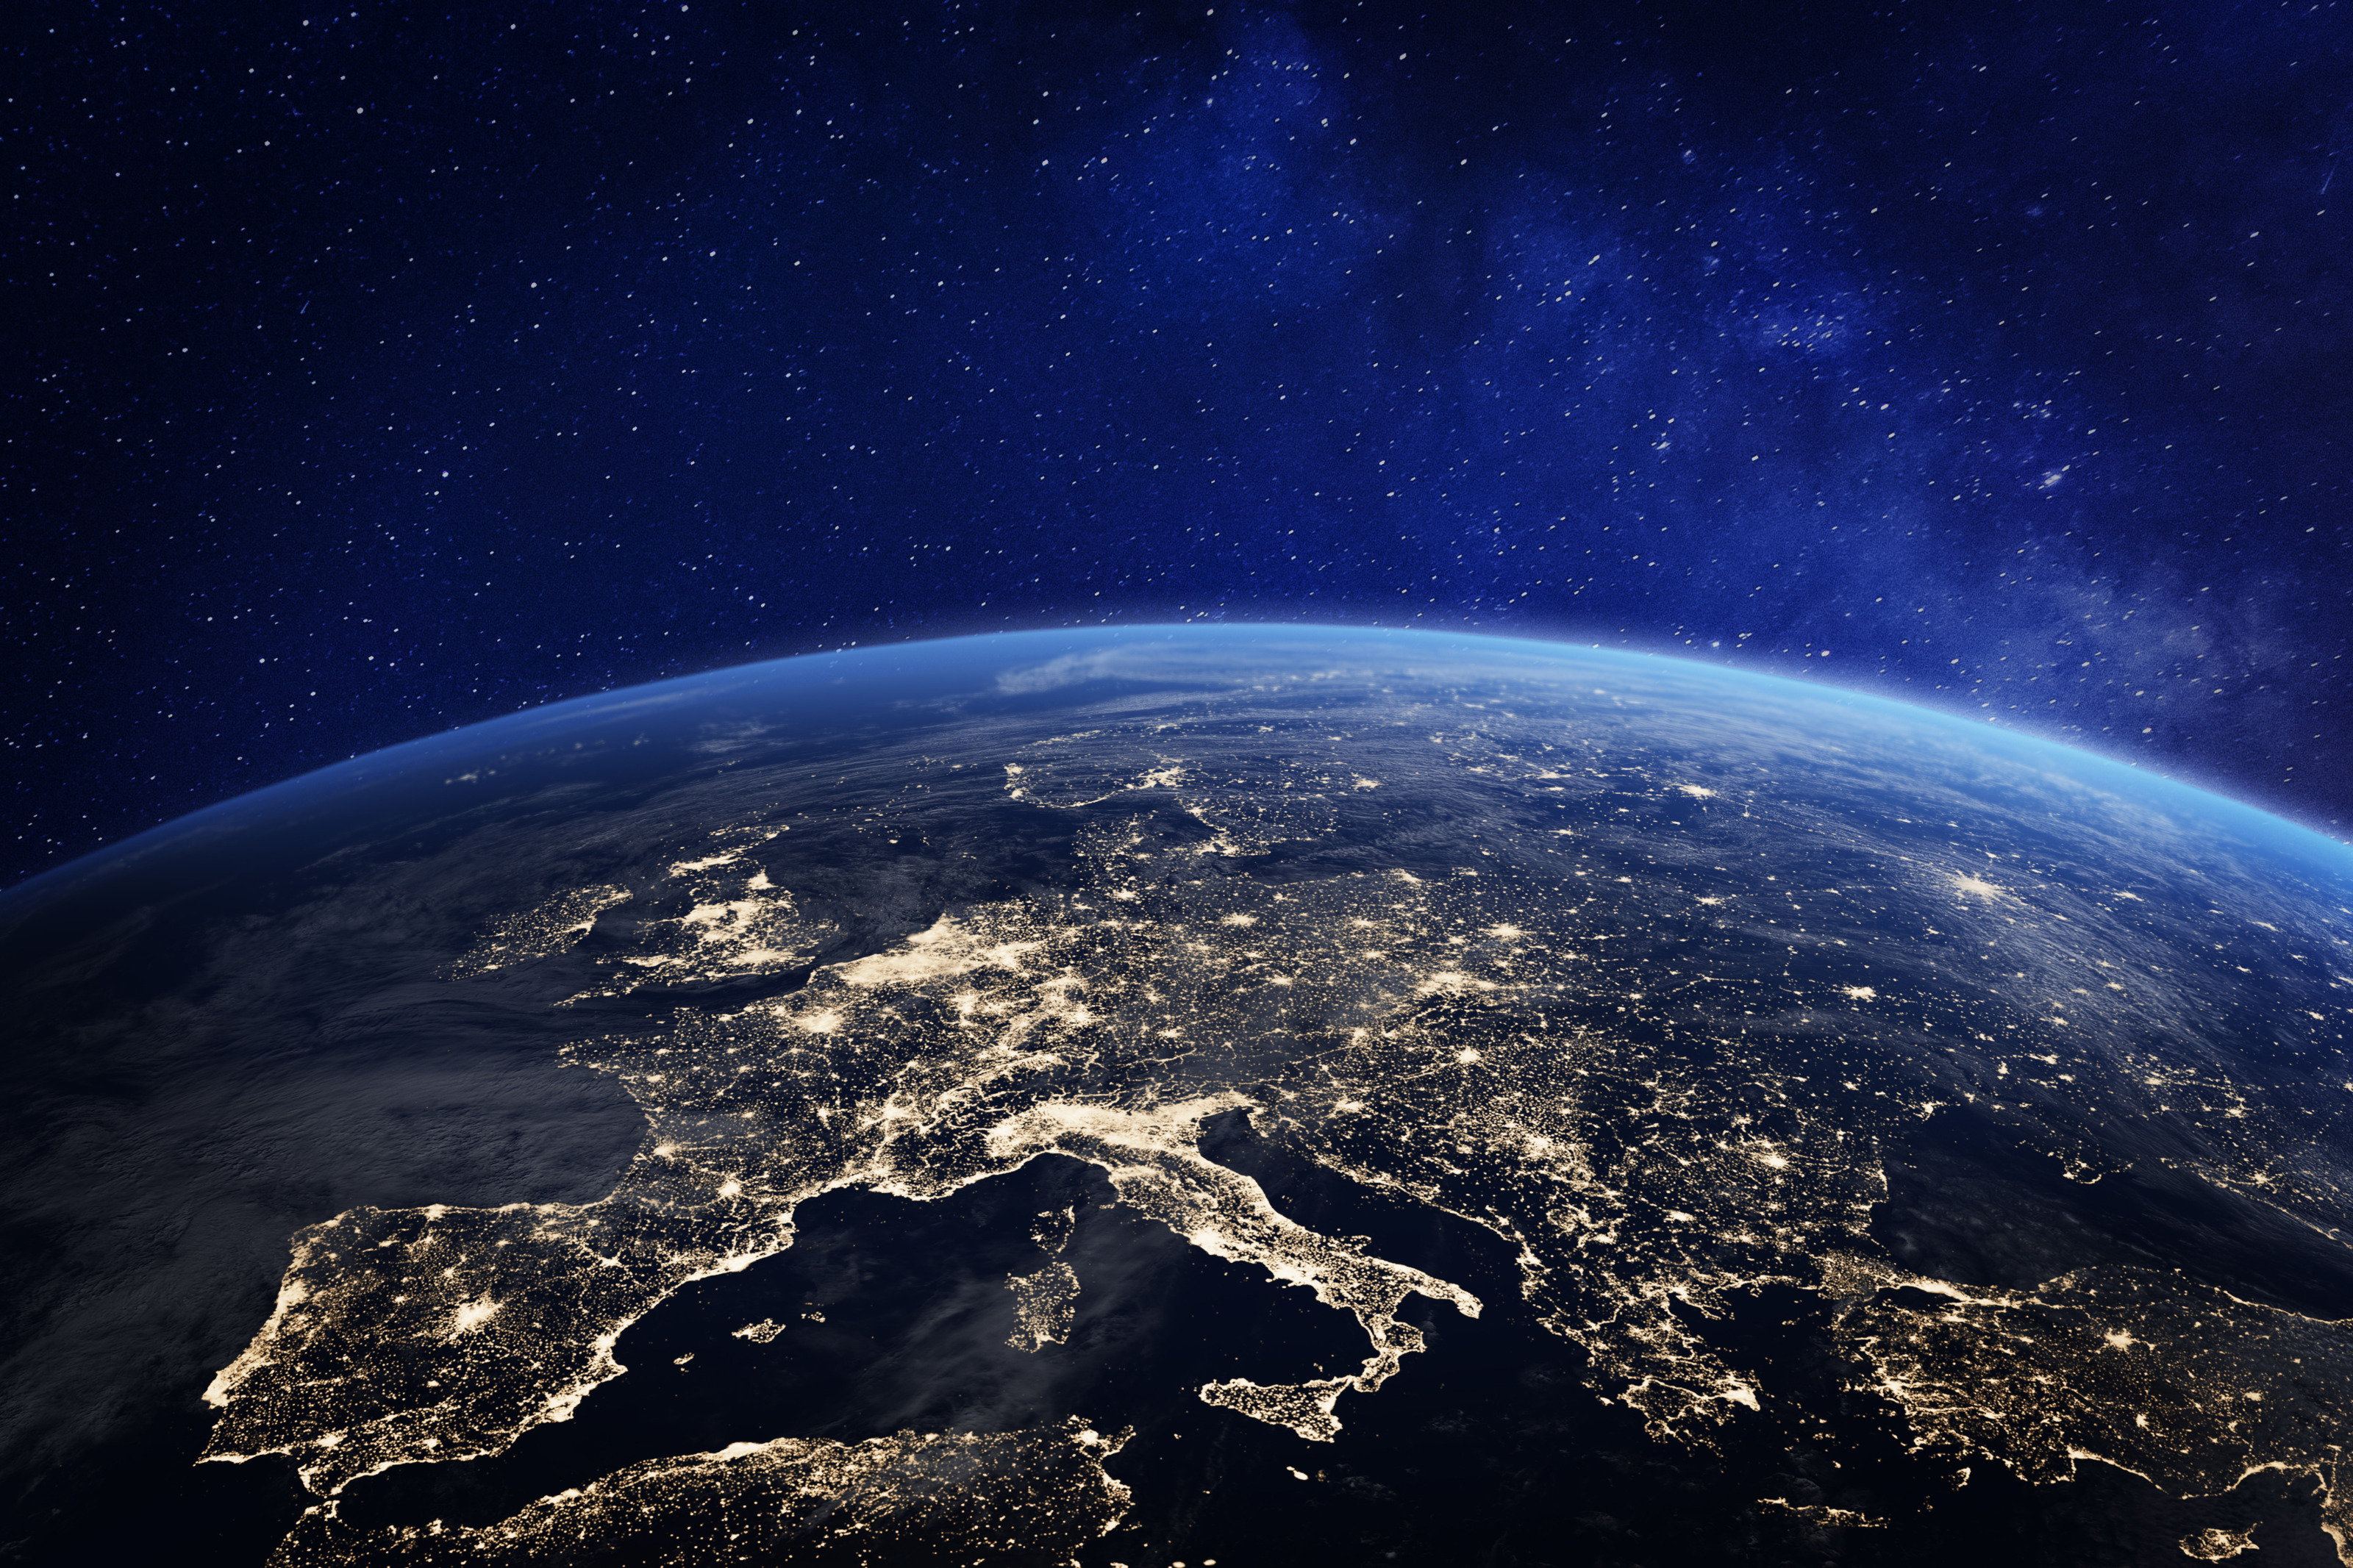 Satellitenaufnahme Europas bei Nacht mit vielen hellen Punkten, Wölbung der Erde ersichtlich